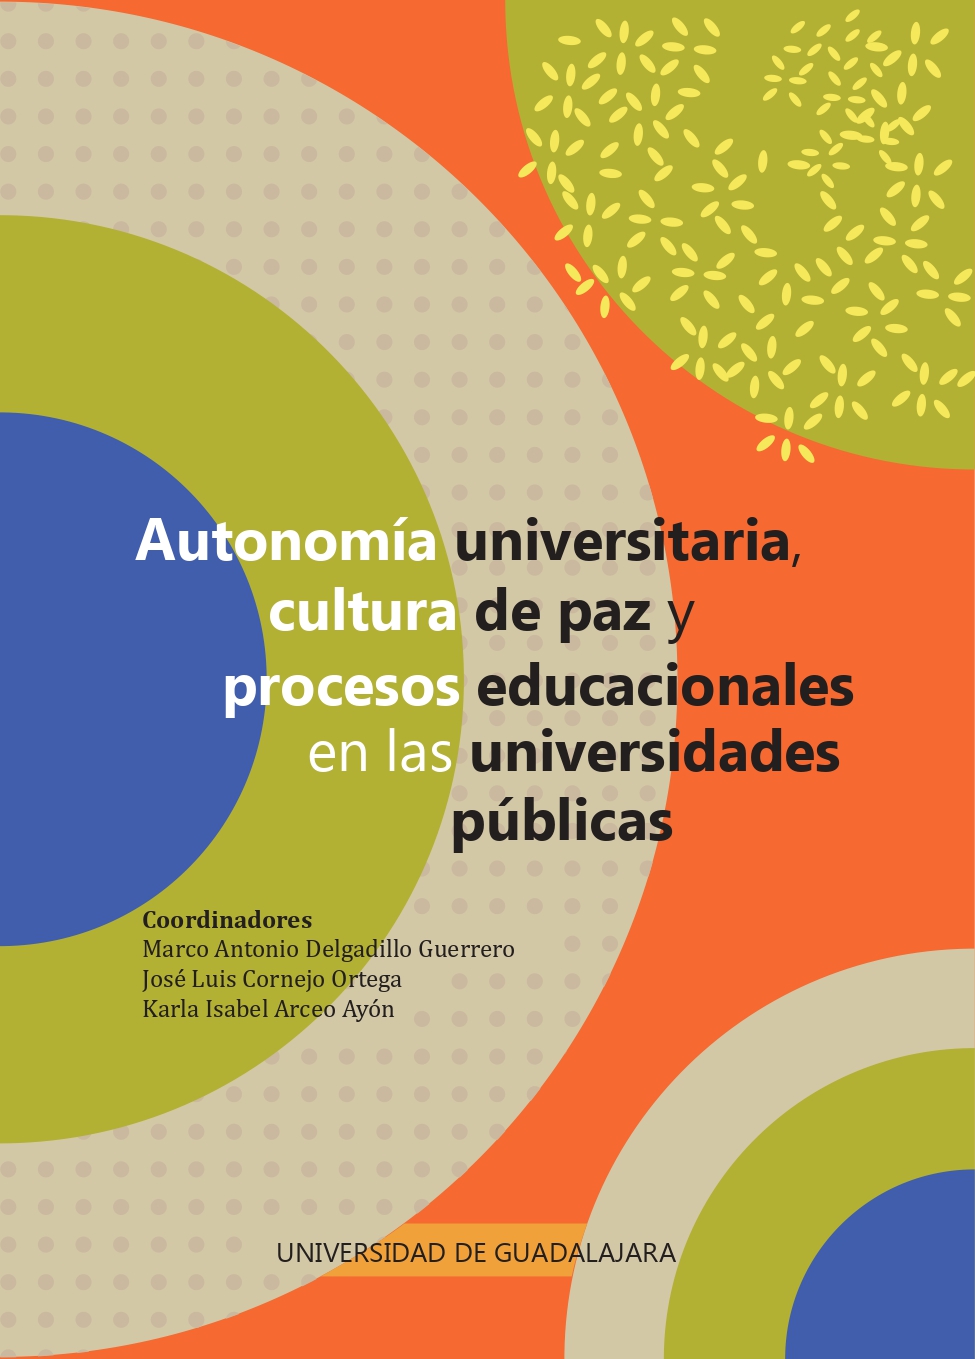 Autonomía universitaria, cultura de paz y procesos educacionales en las universidades públicas<br />
